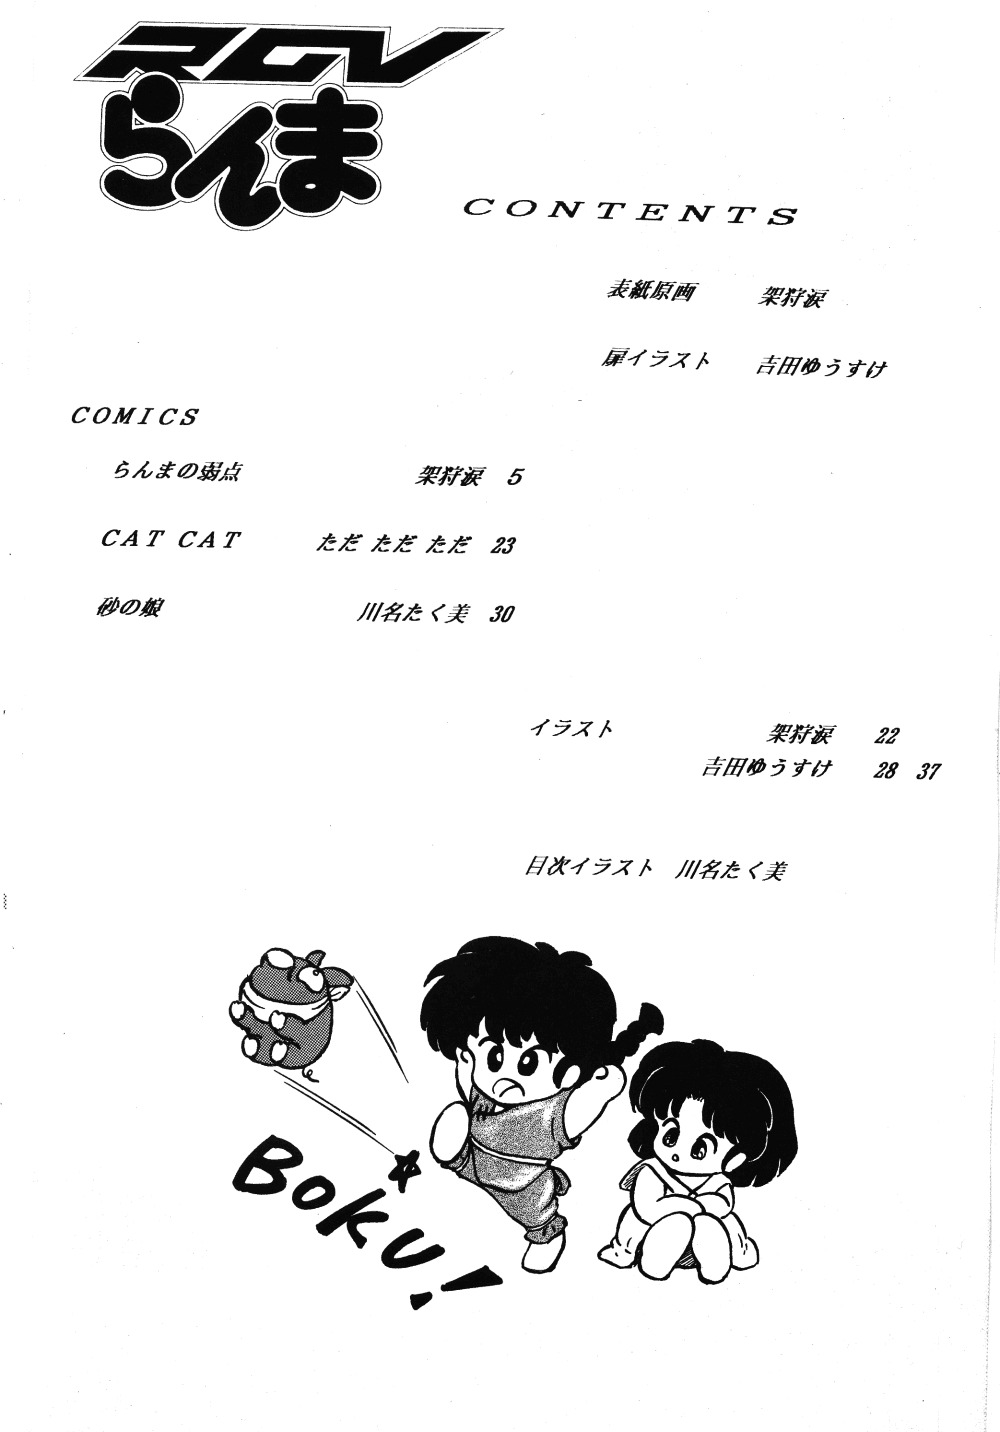 [TADA-TADA-TADA / Lamia Planting (Kagarir Rui, Kawanat Takumi, Yosida Yusuke)] Ranma RGV (Ranma 1/2) [English] [SaHa] page 3 full